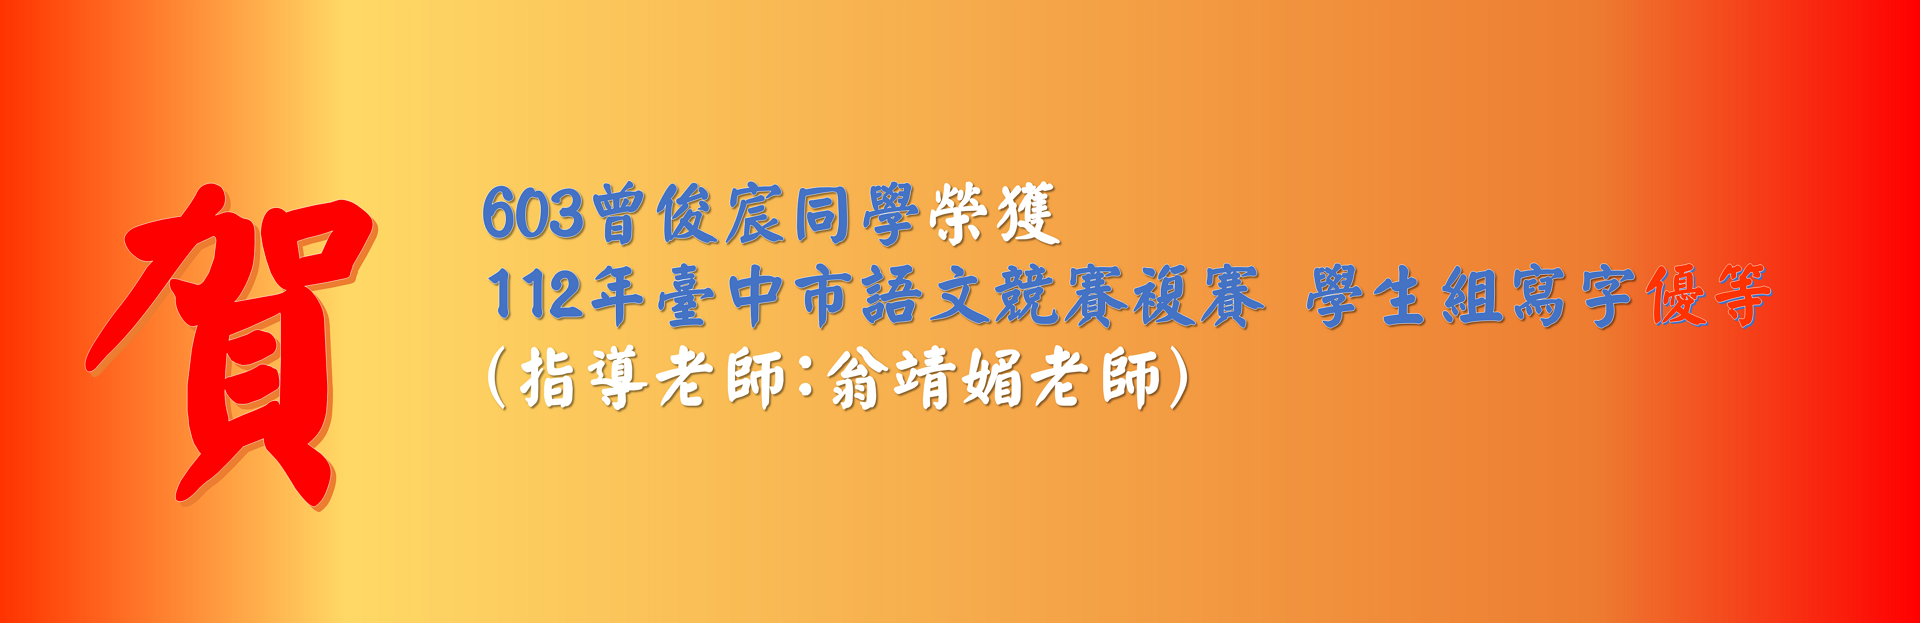 603曾俊宸同學榮獲 112年臺中市語文競賽複賽 學生組寫字優等